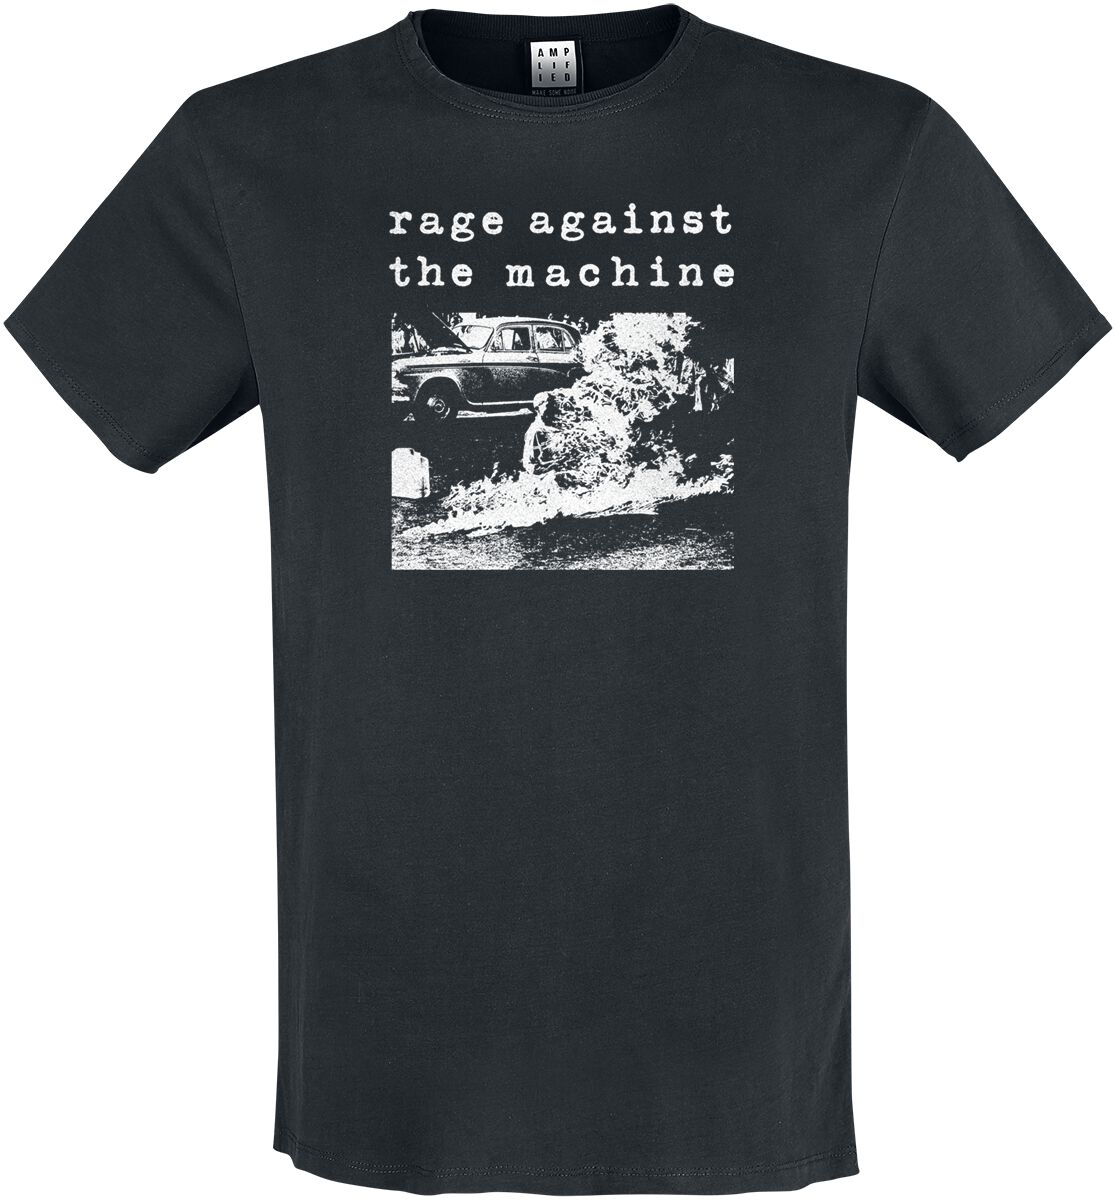 Rage Against The Machine T-Shirt - Amplified Collection - Monk Fire - S bis 3XL - für Männer - Größe XXL - schwarz  - Lizenziertes Merchandise!